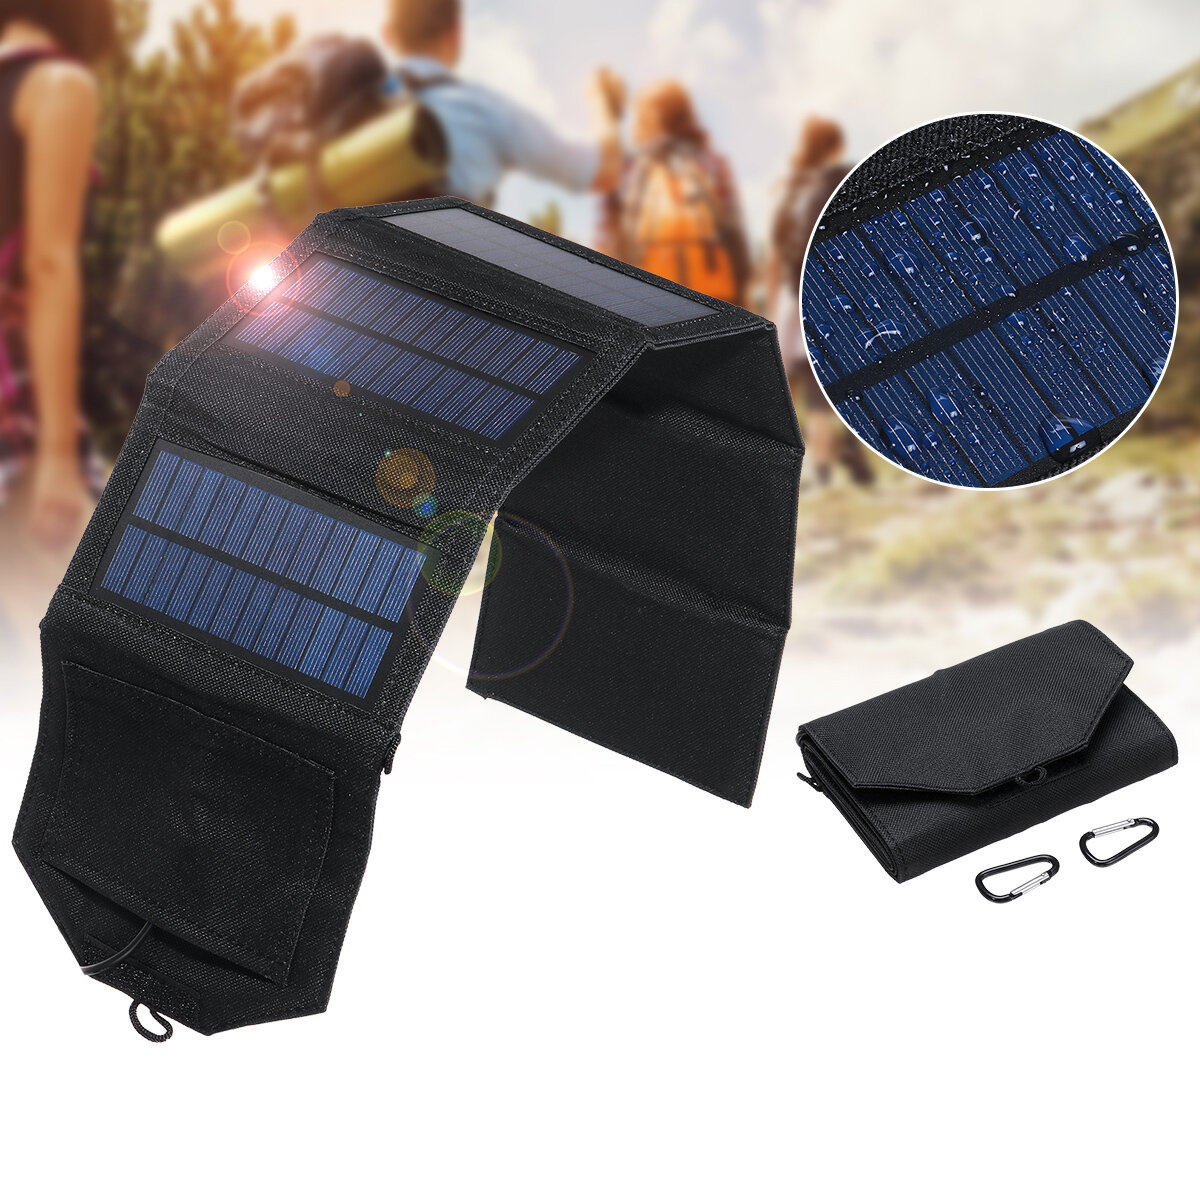 Panneau solaire pliable avec port USB IP65 étanche portable charge solaire haute efficacité pour camping randonnée escalade téléphone charge